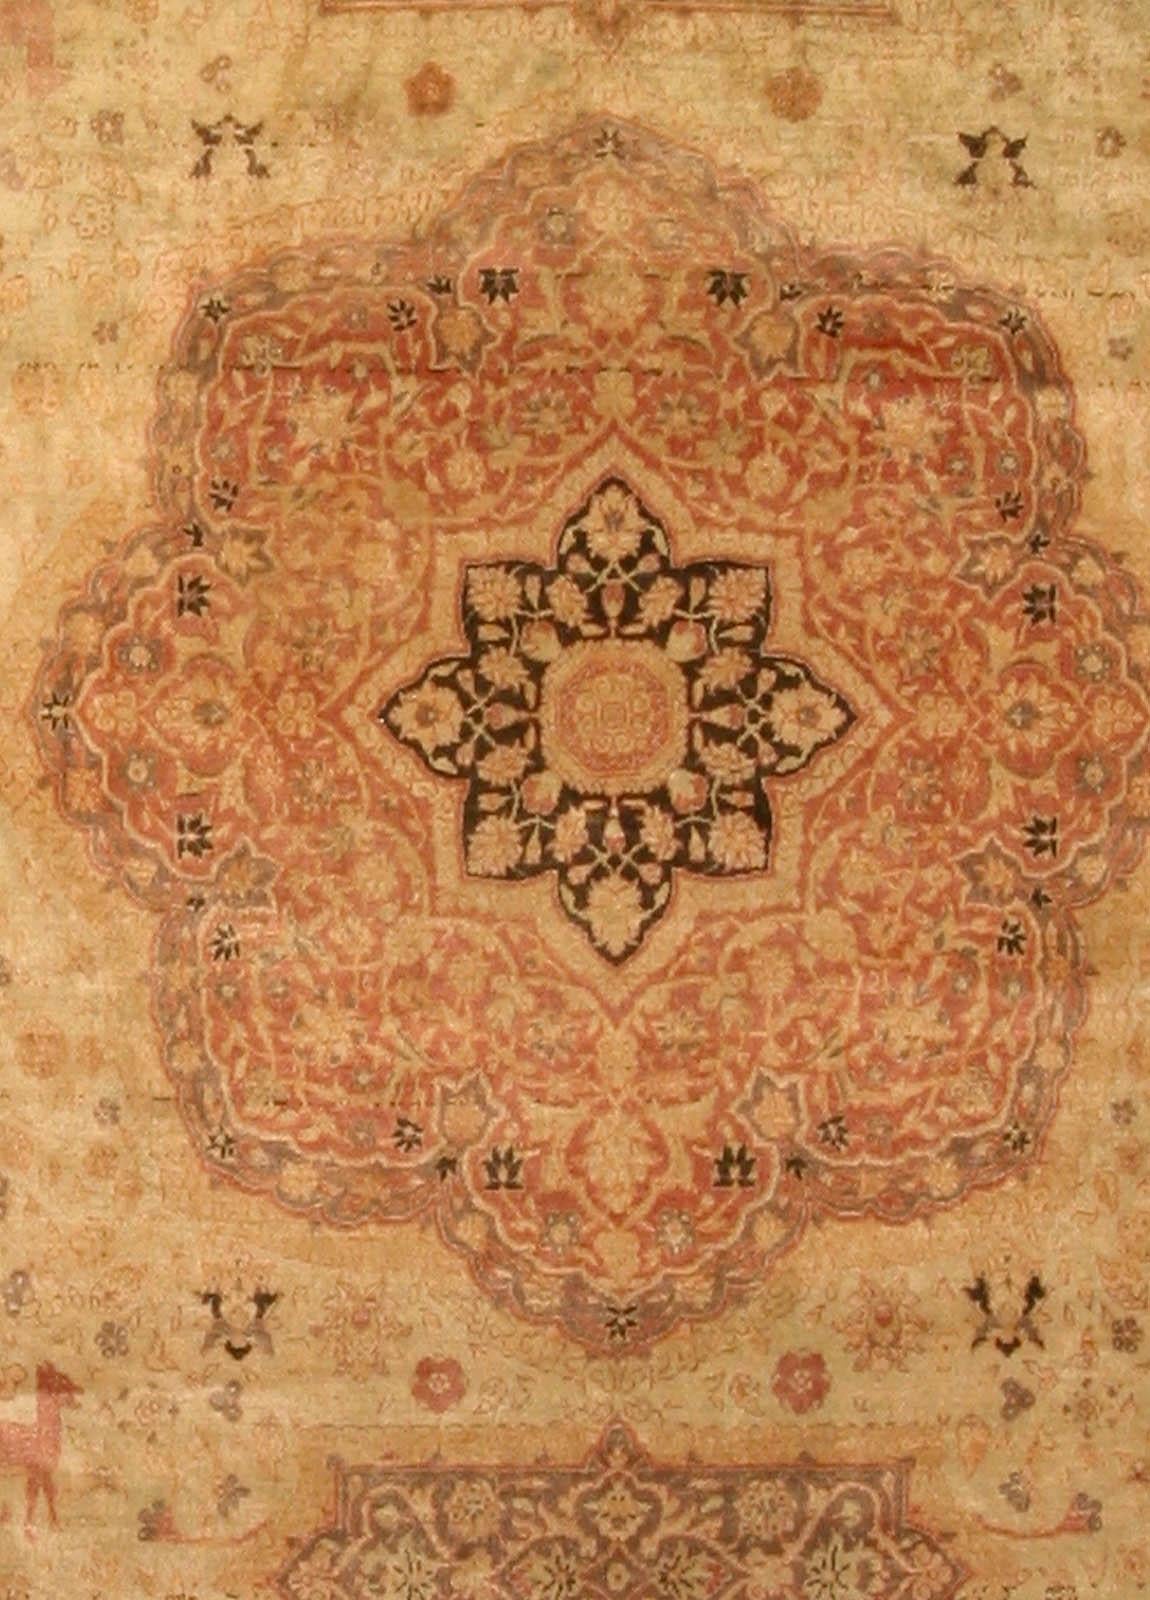 Antique Turkish Sivas animal botanic brown handmade wool carpet
Size: 10'9